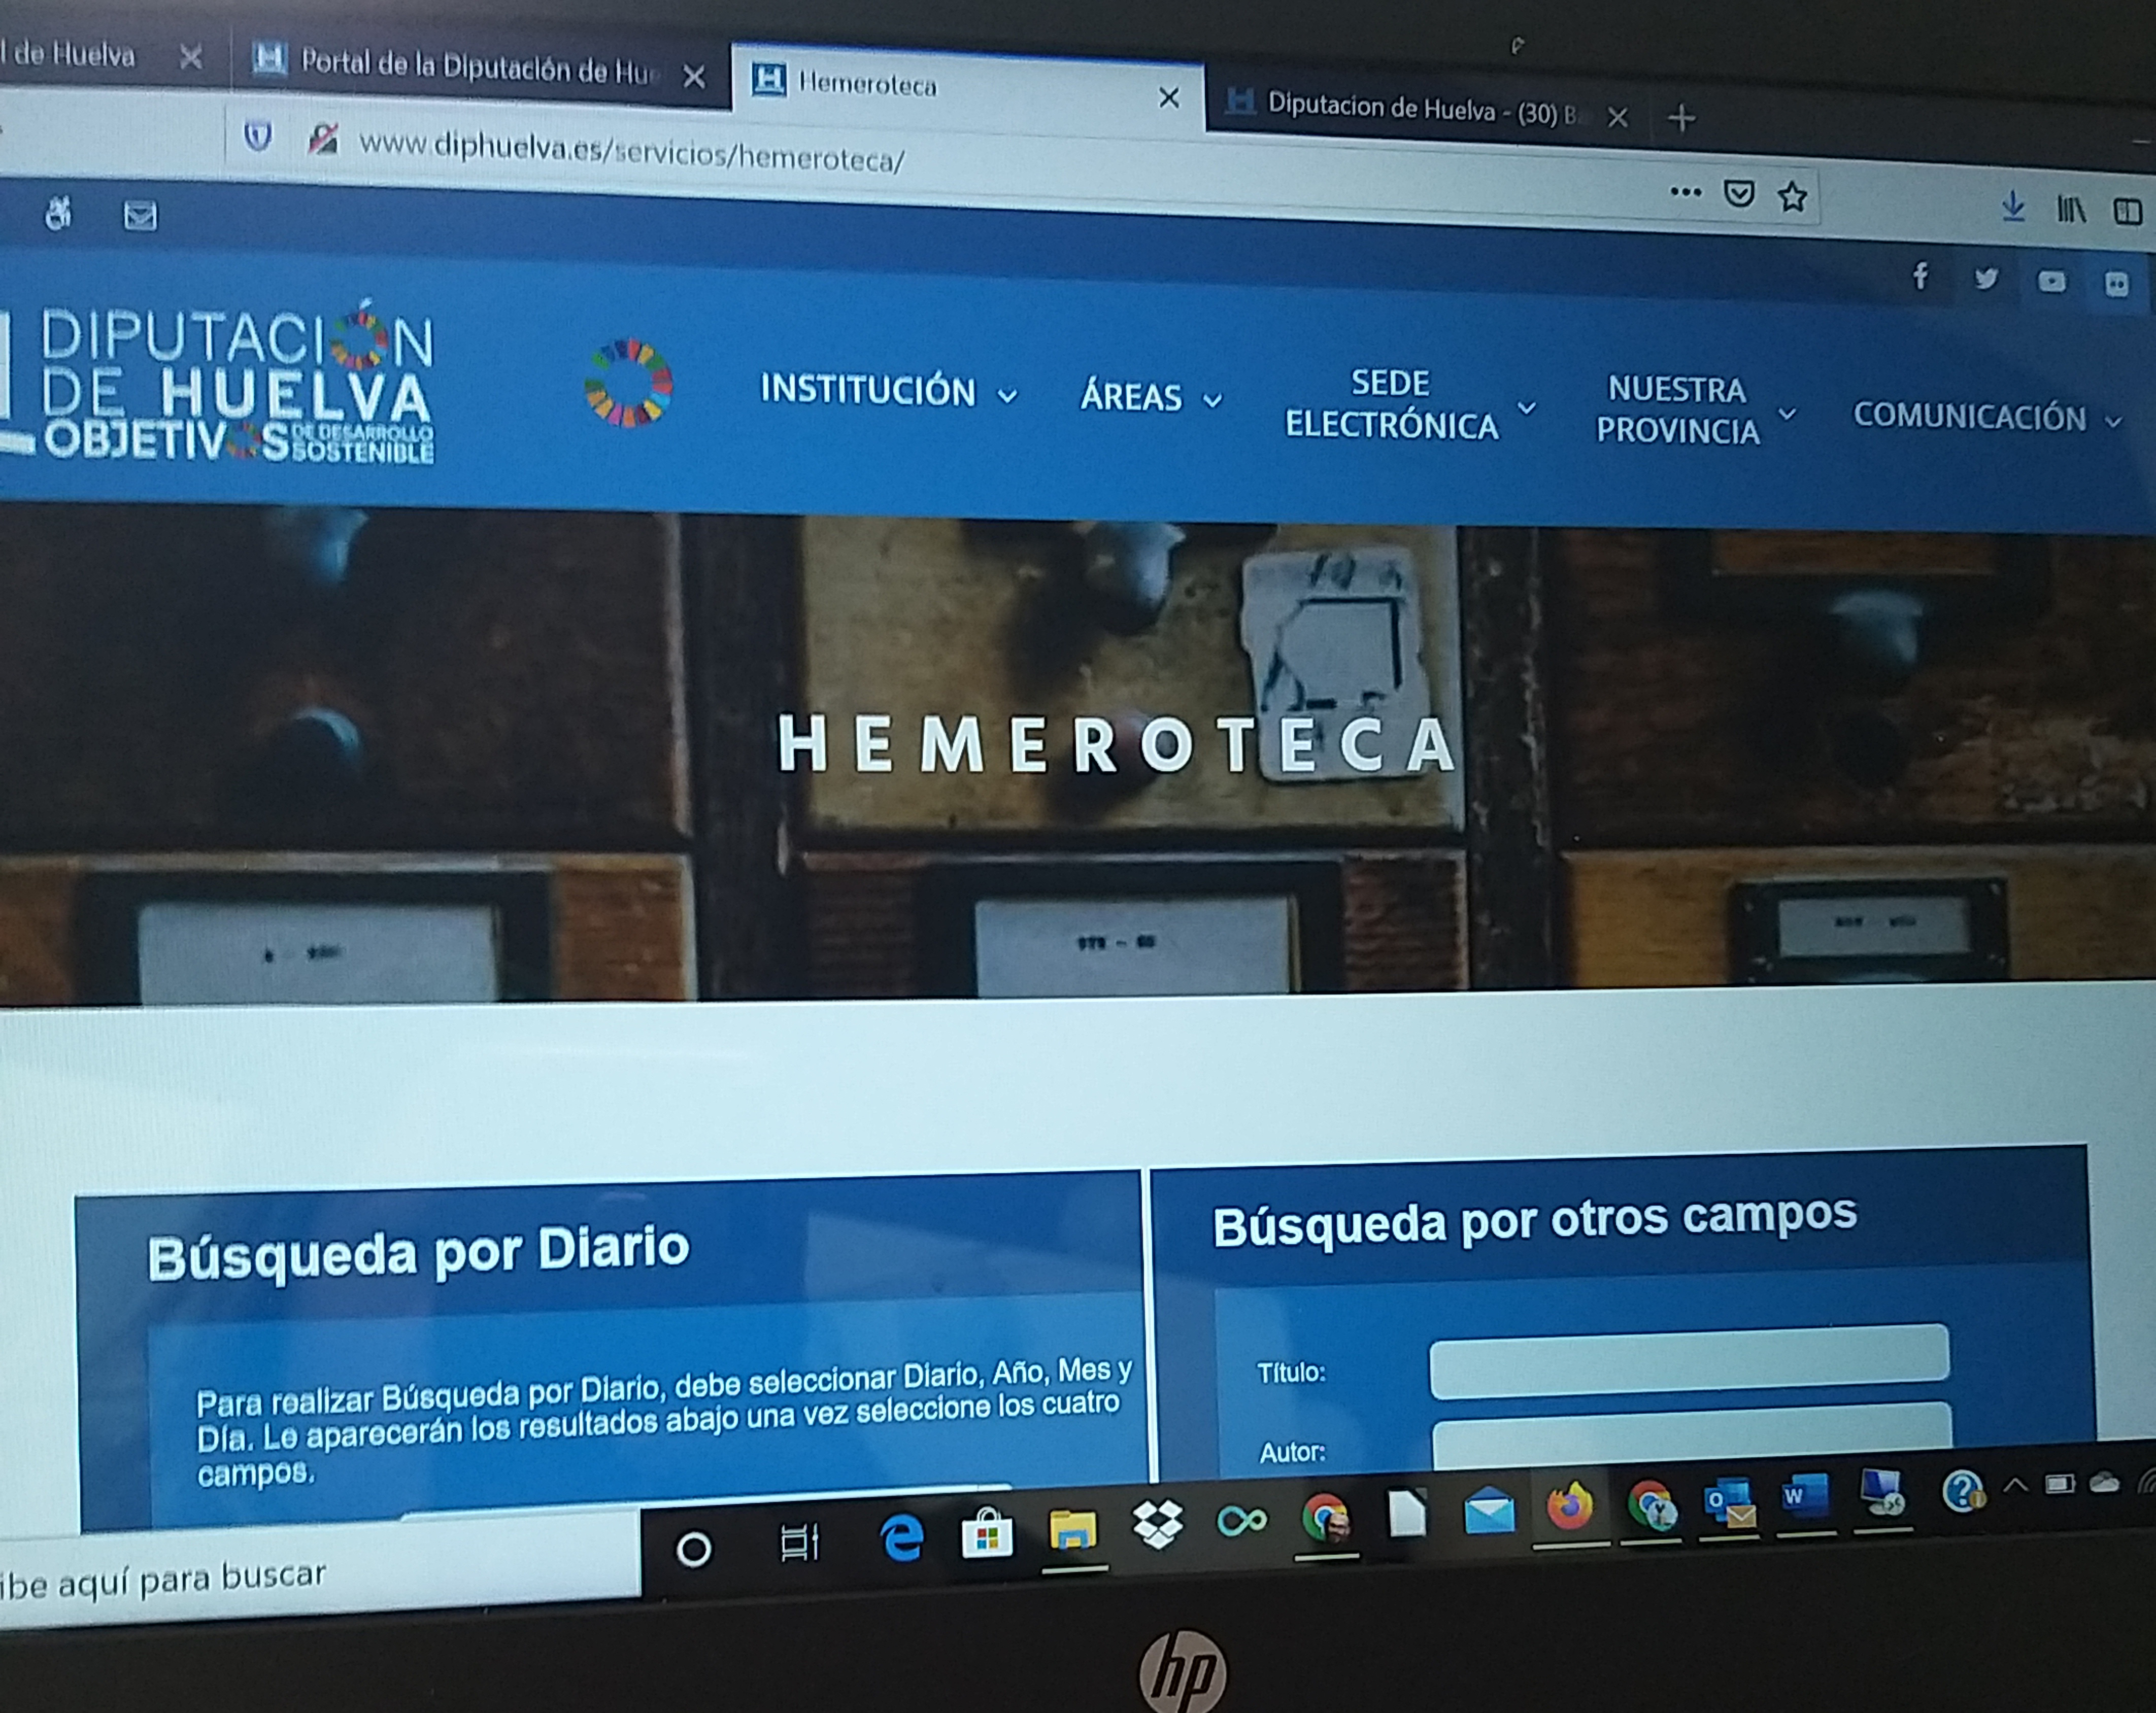 La Diputación de Huelva facilita el libre acceso y consulta on line de su hemeroteca digital